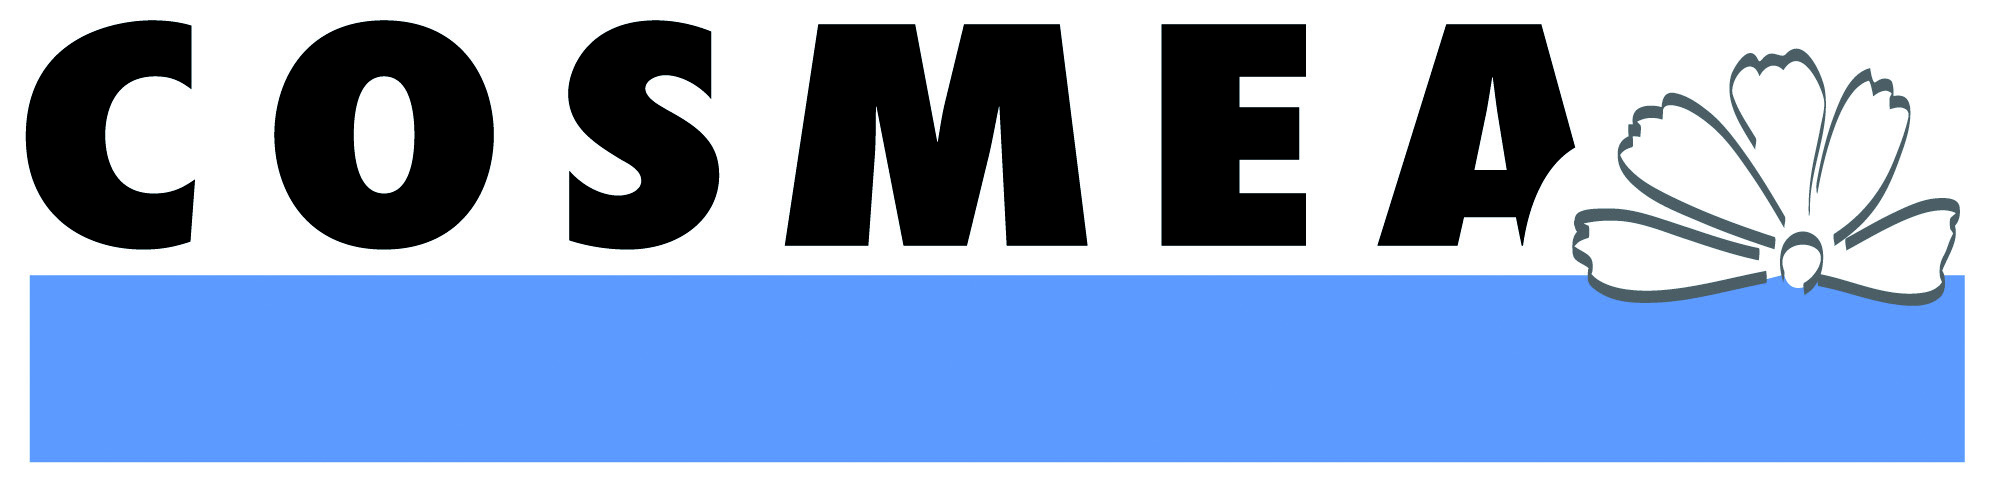 Cosmea Logo CMYK ohne Text